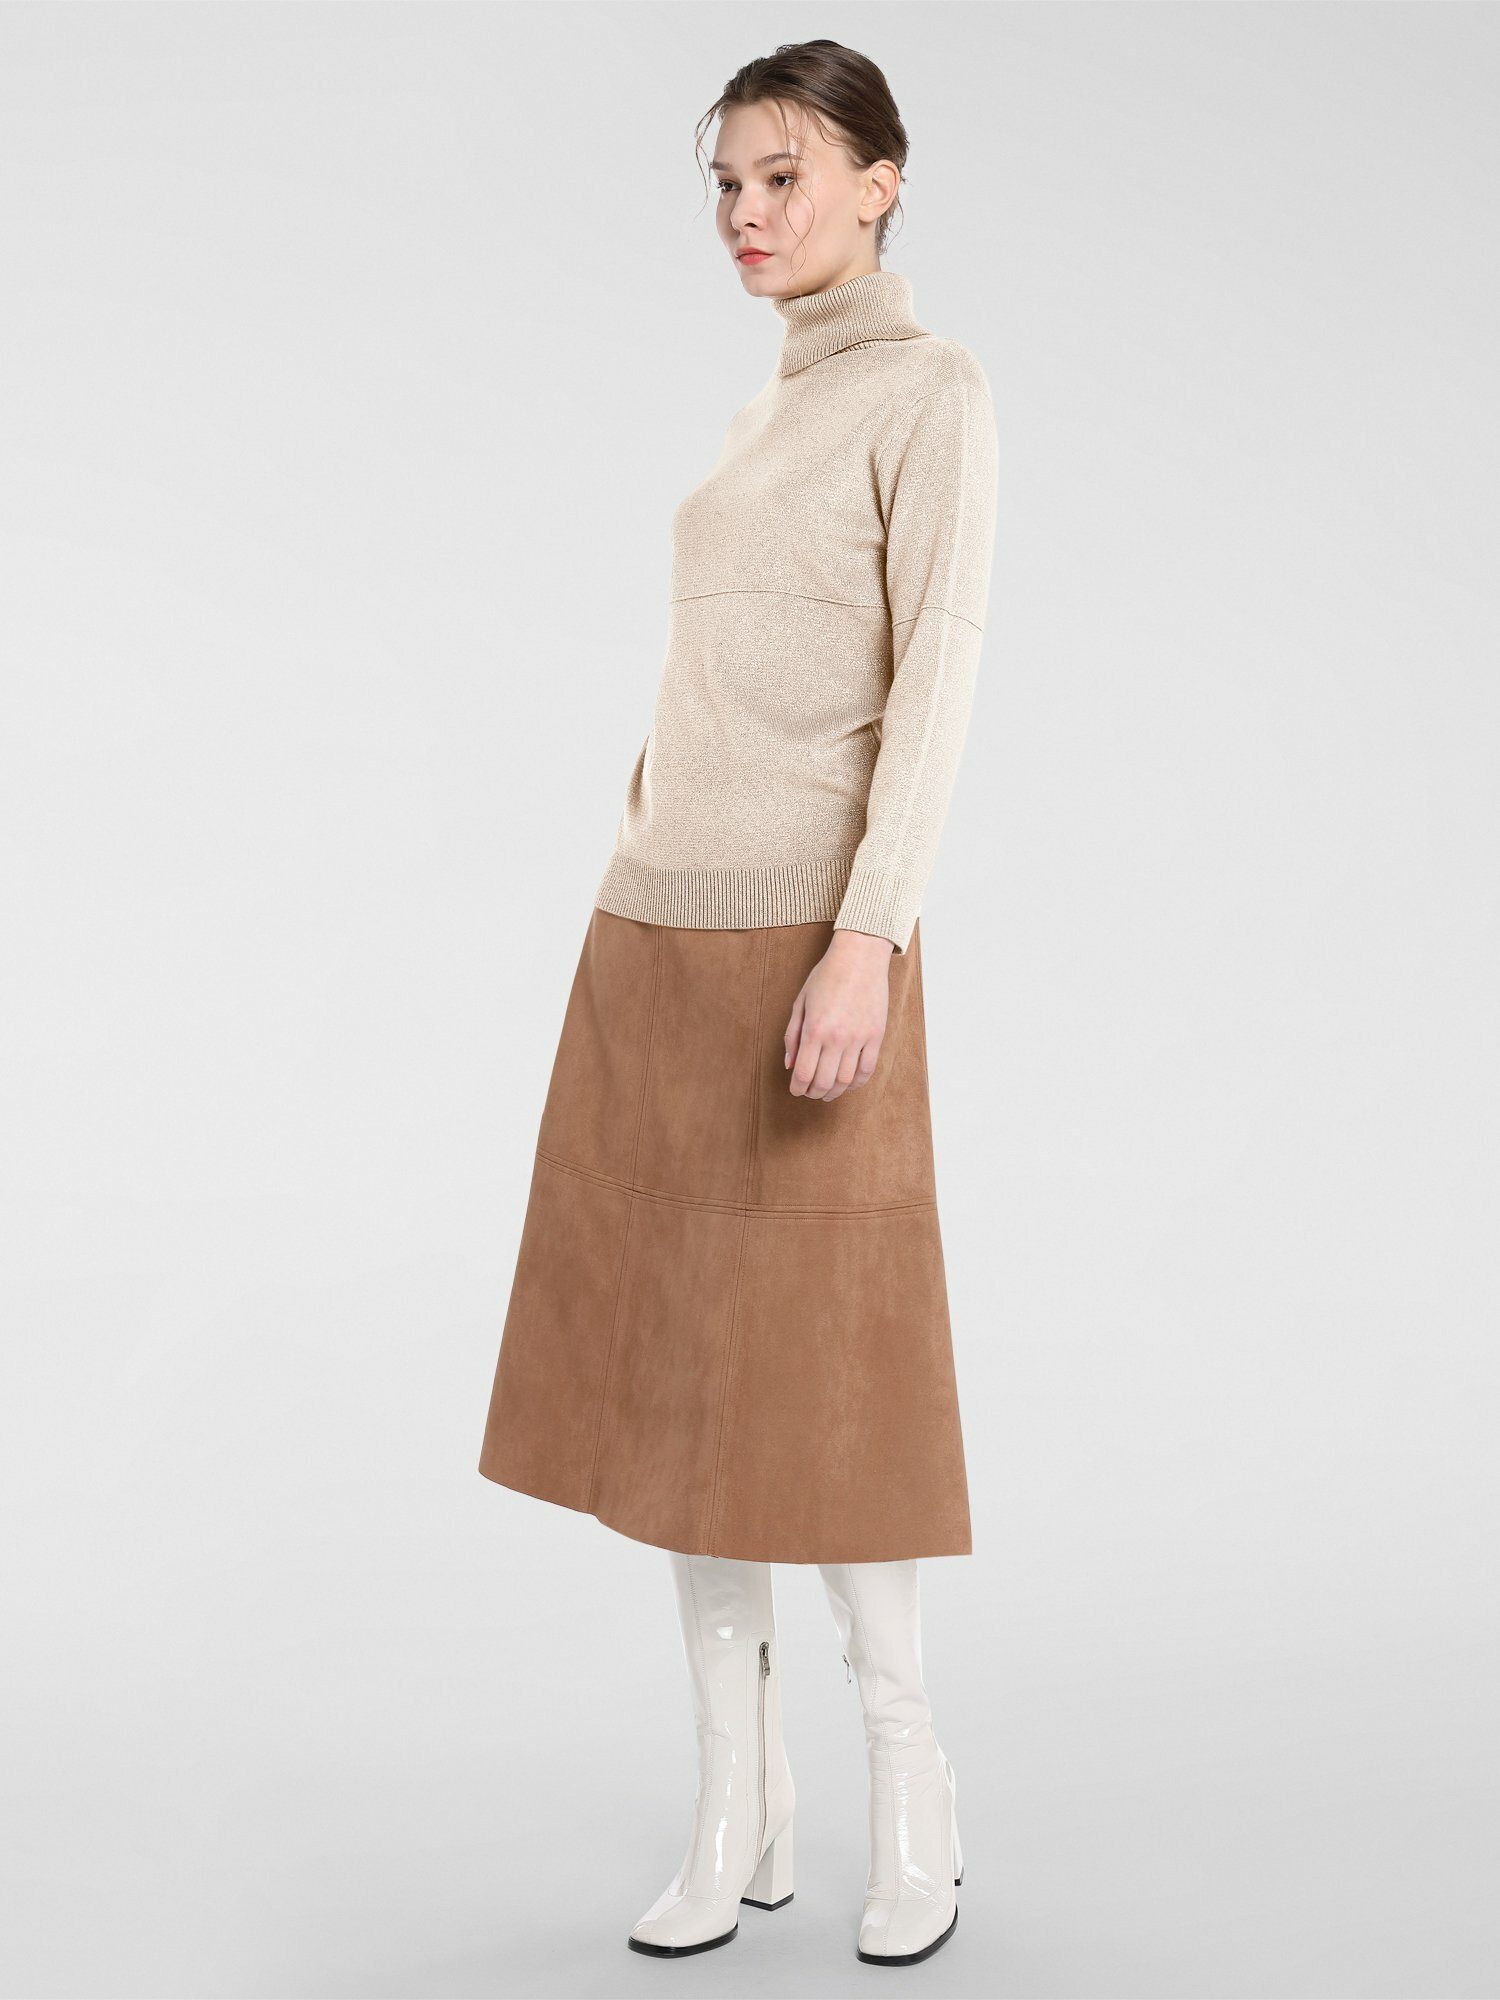 Damen Pullover Apart Polokragenpullover aus weichem Strick